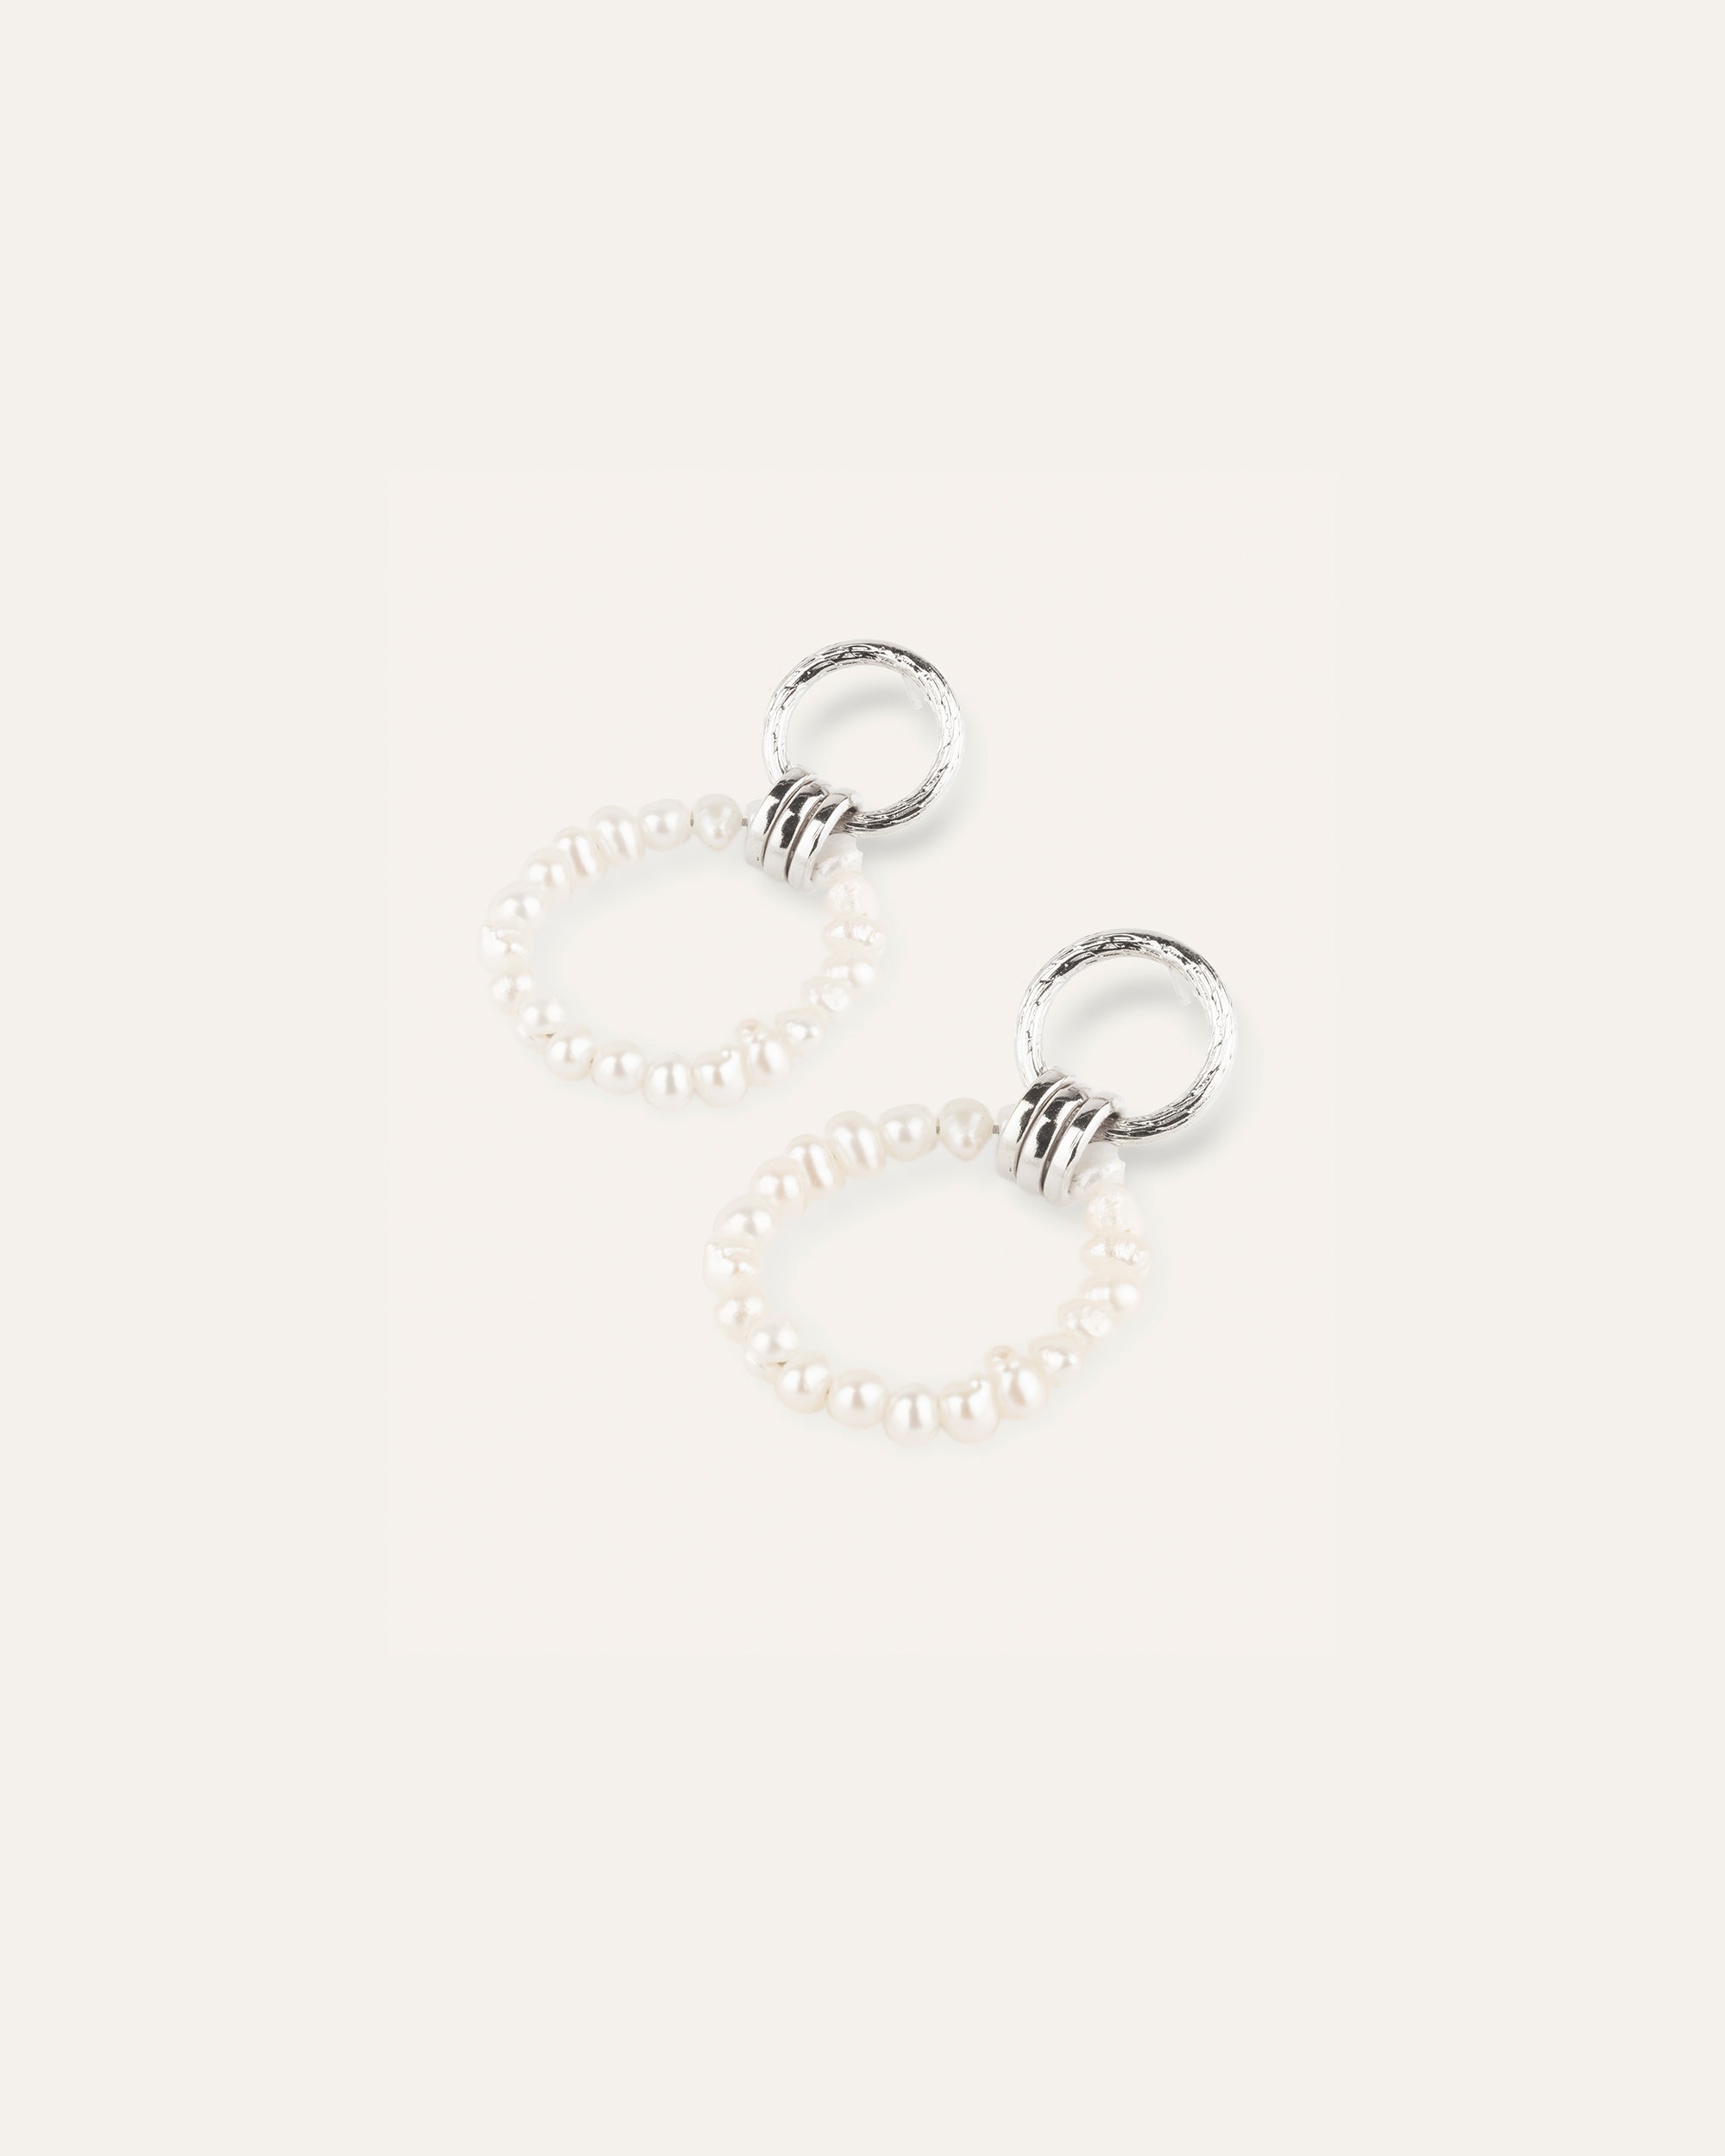 Boucles d'oreilles double anneaux avec des perles de culture en argent massif 925 et made in France.